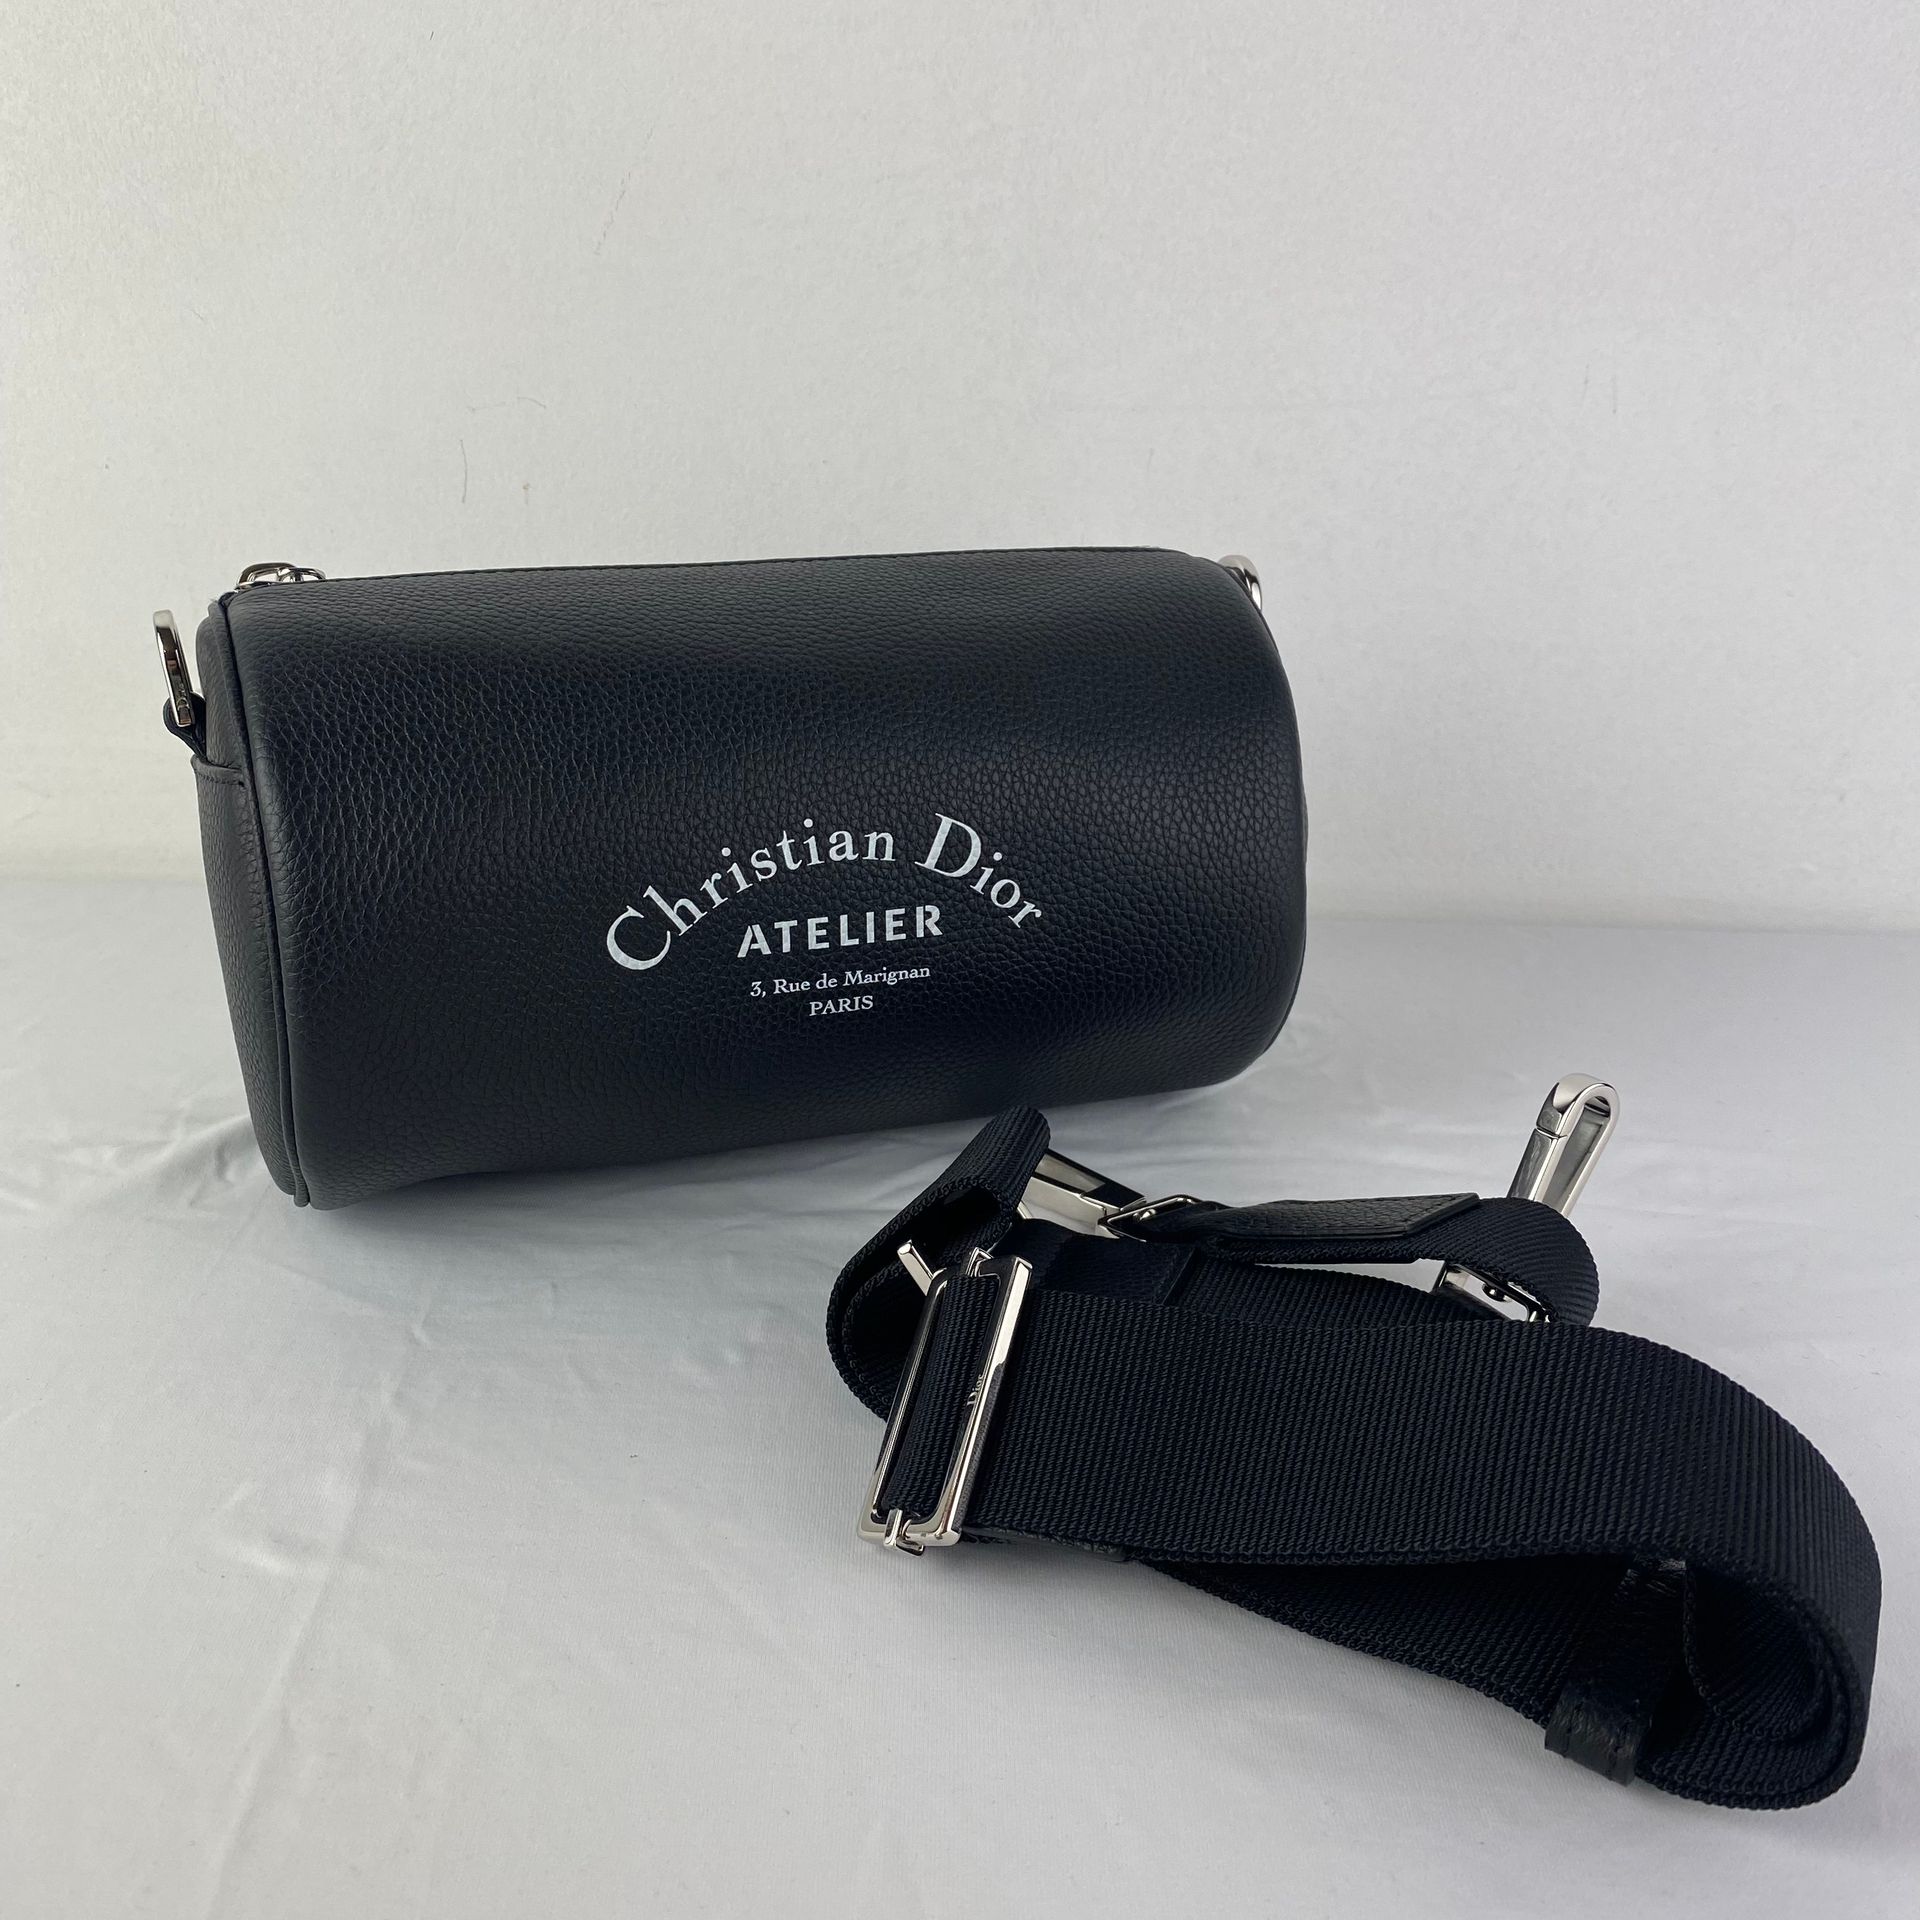 DIOR A DIOR clutch bag model Atelier Roller Bag in black leather with shoulder s&hellip;